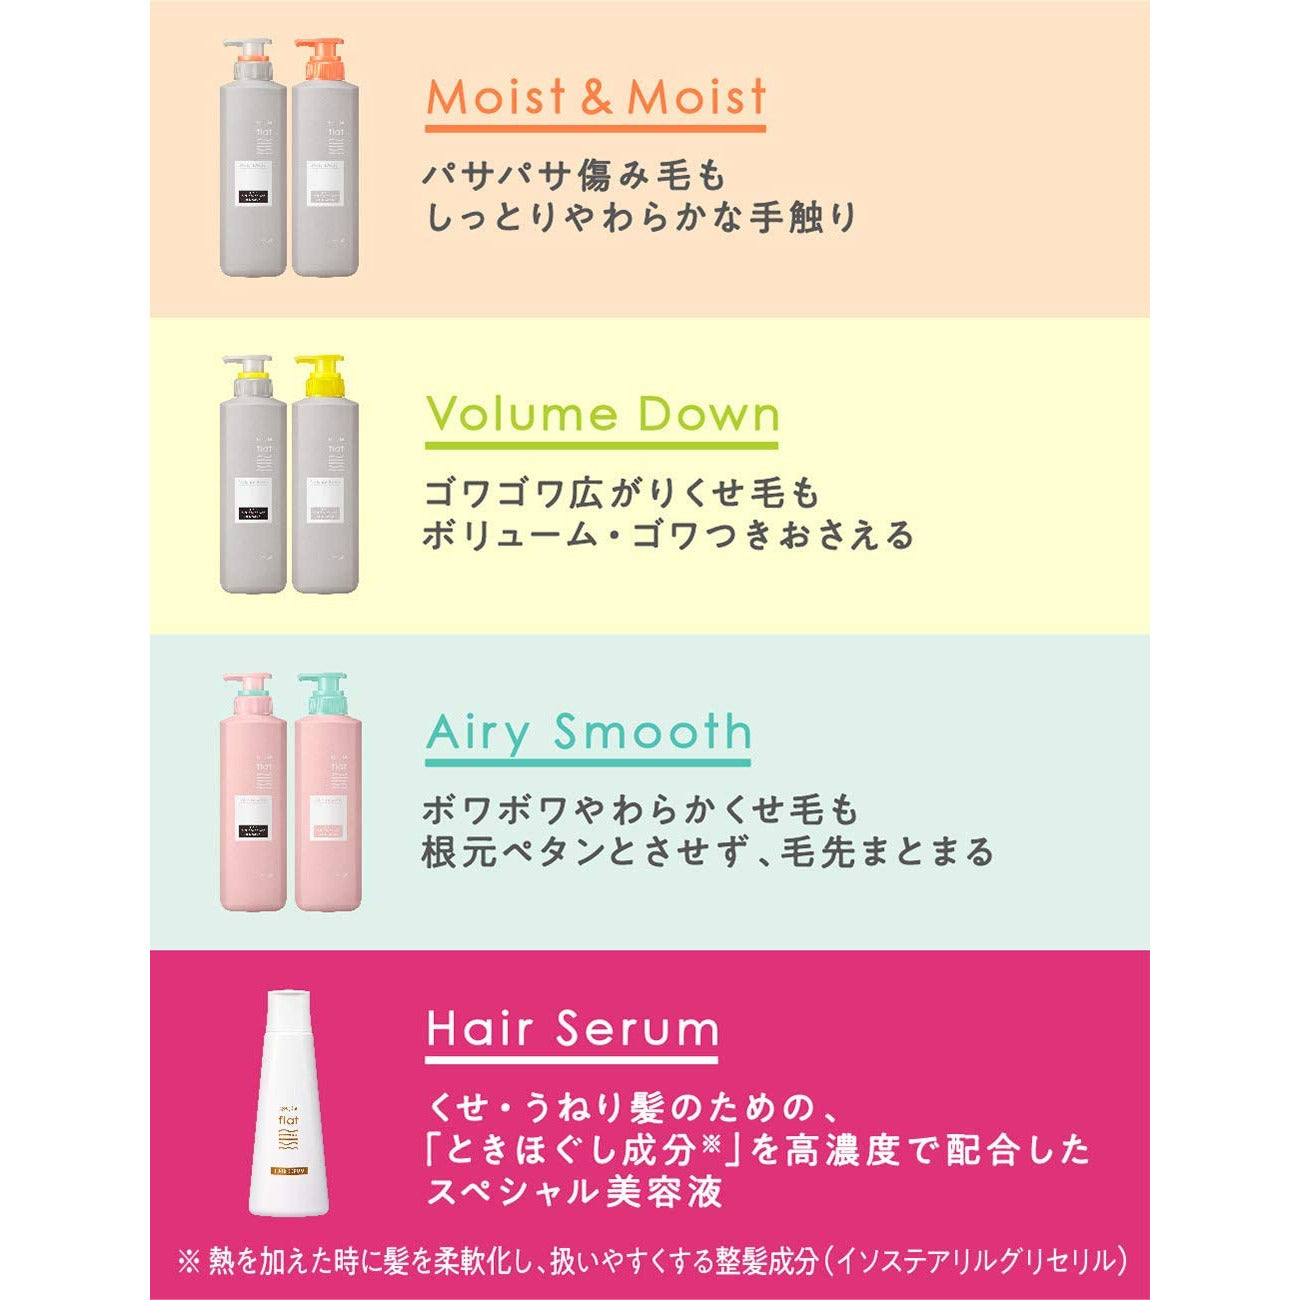 Kao Essentials flat Moist & Moist Shampoo Refill 340ml